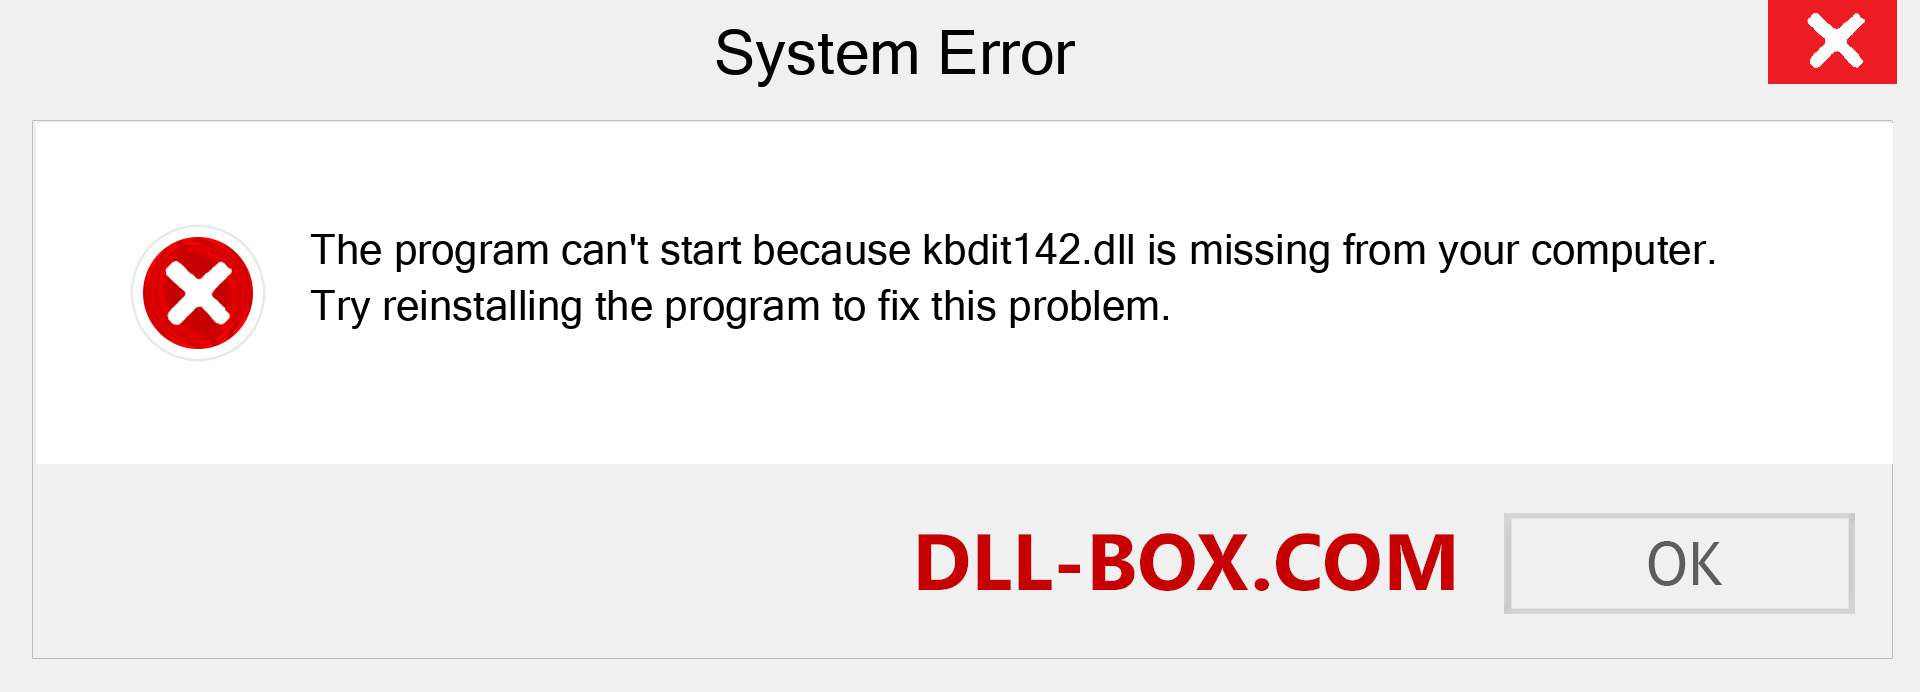  kbdit142.dll file is missing?. Download for Windows 7, 8, 10 - Fix  kbdit142 dll Missing Error on Windows, photos, images